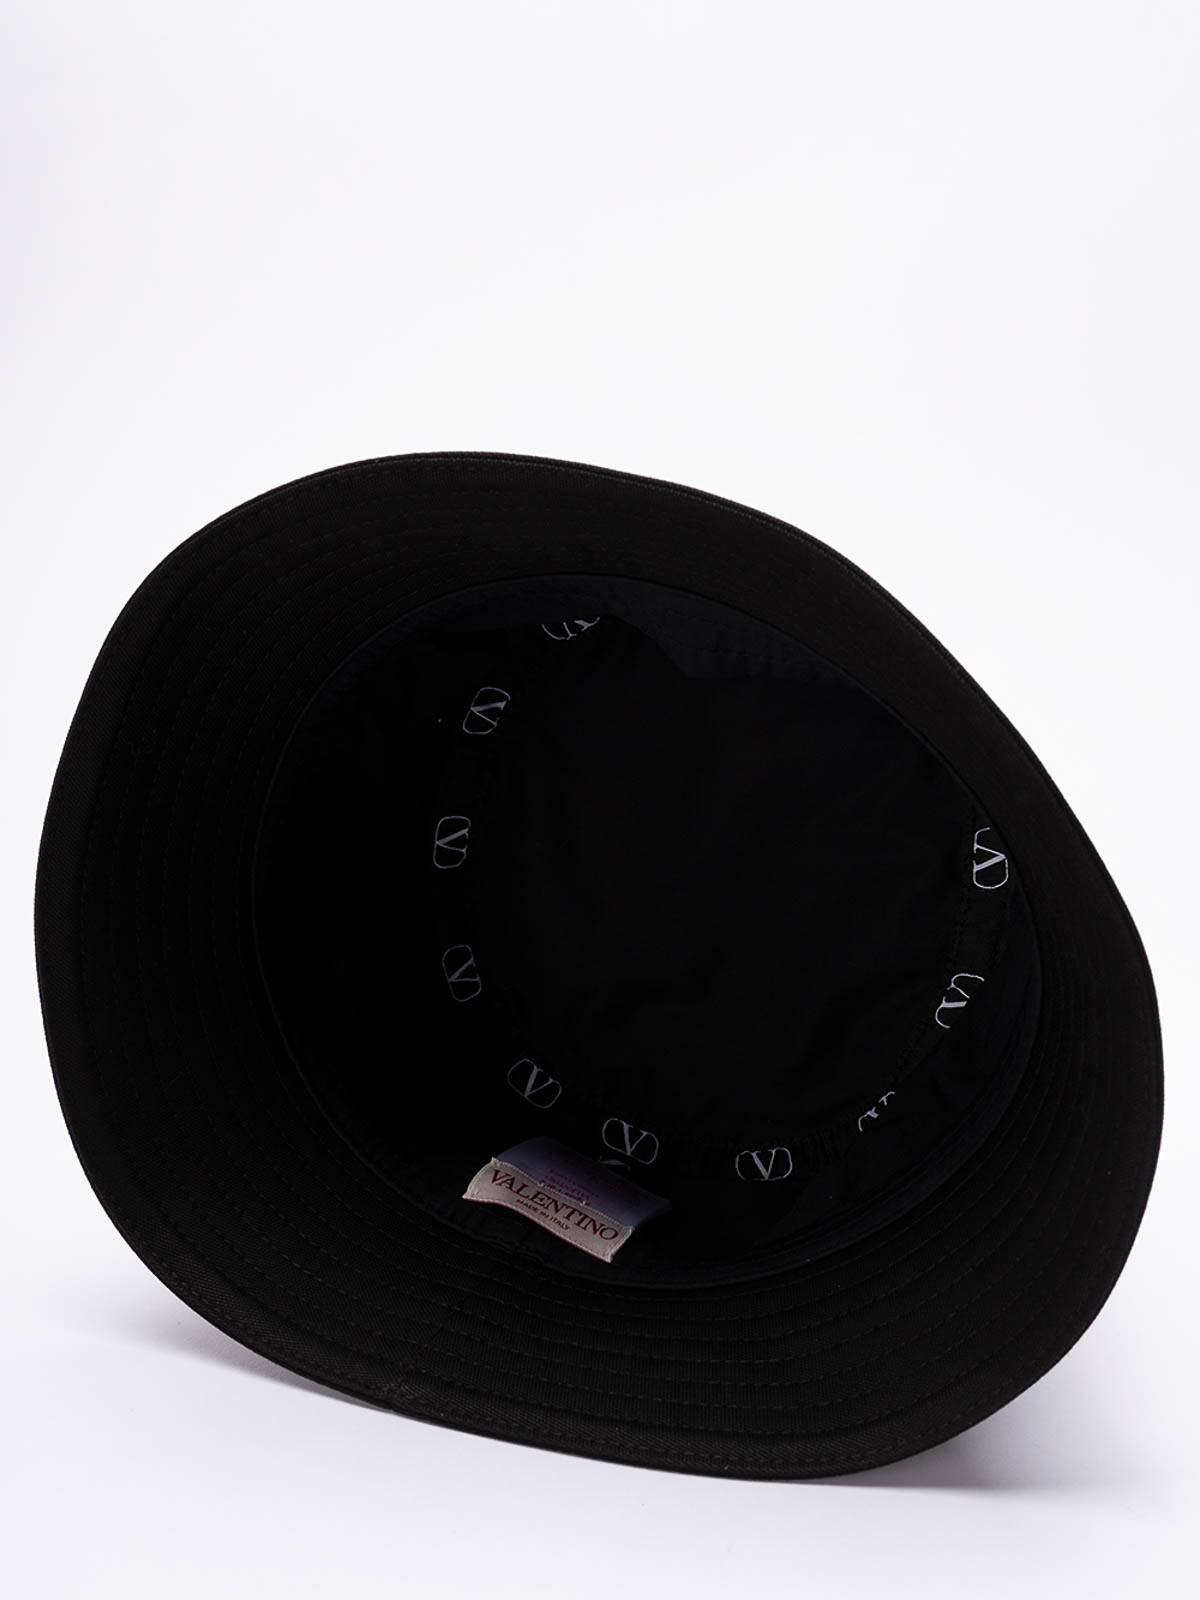 Shop Valentino Sombrero - V Signature In Black